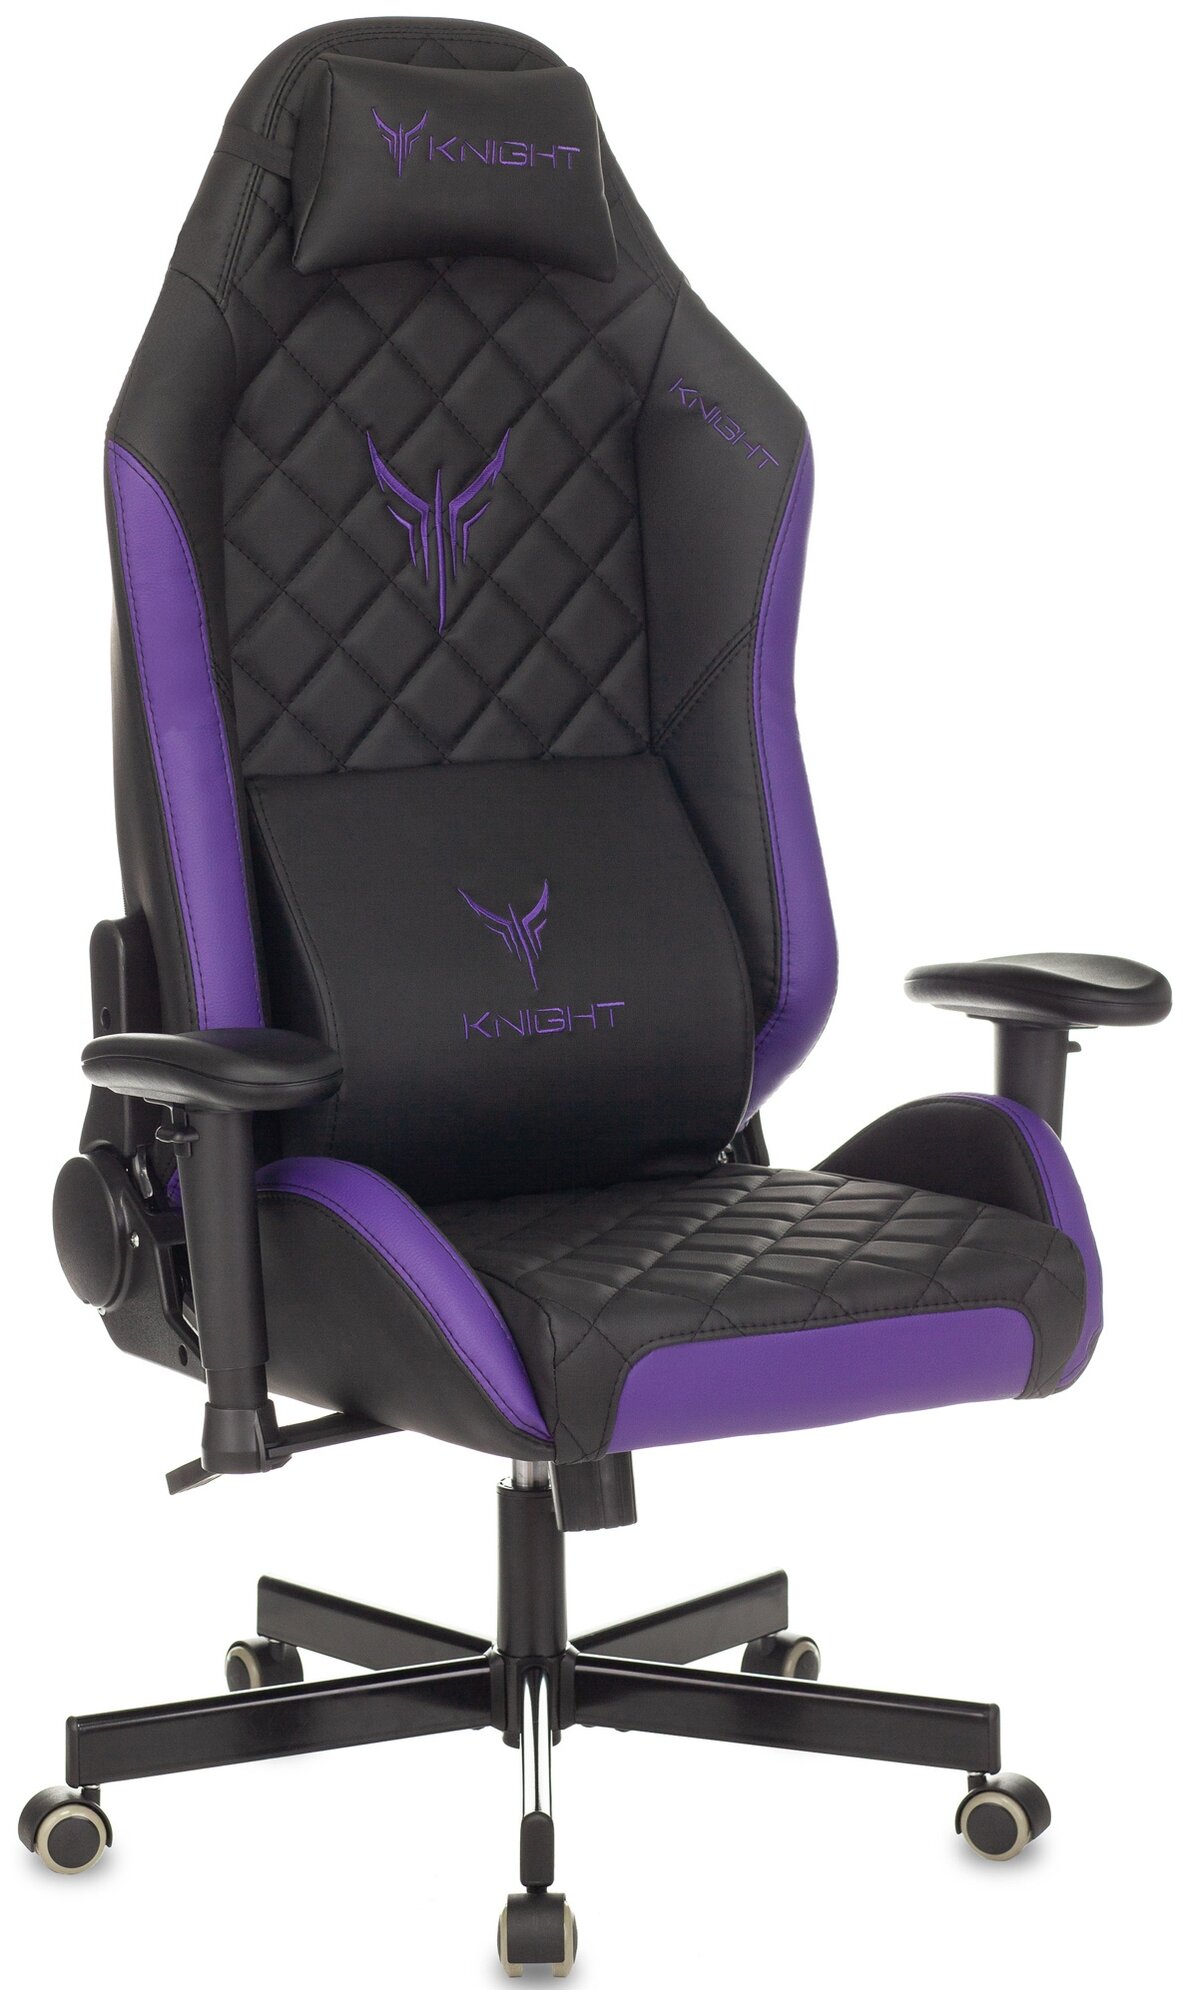 Кресло игровое Knight EXPLORE черный / фиолетовый ромбик, экокожа / Компьютерное геймерское кресло, 2 подушки, крестовина металл